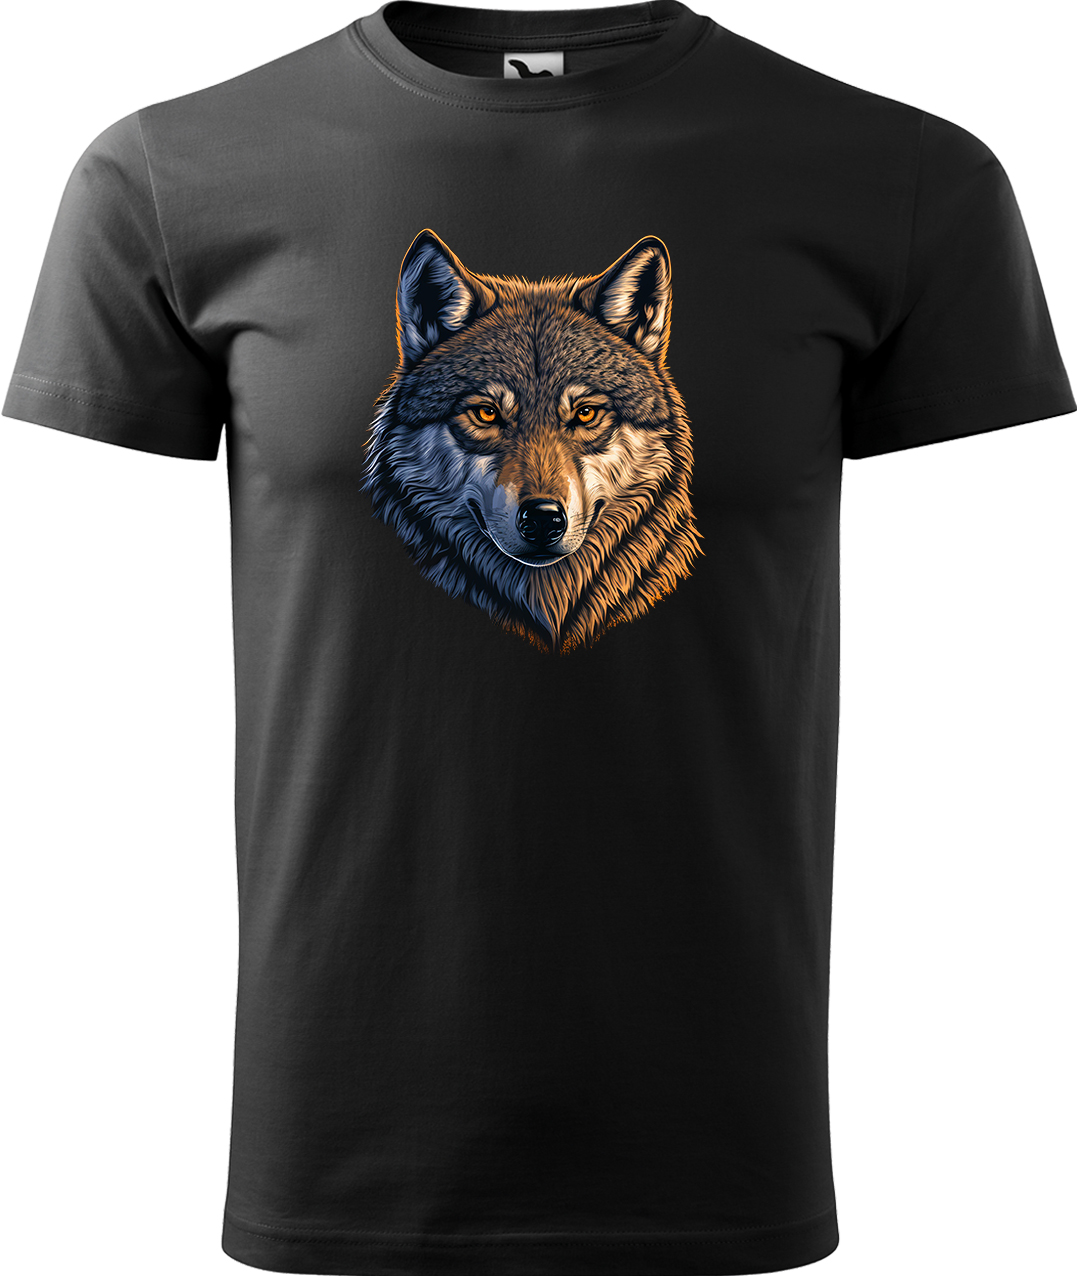 Pánské tričko s vlkem - Hlava vlka Velikost: L, Barva: Černá (01), Střih: pánský